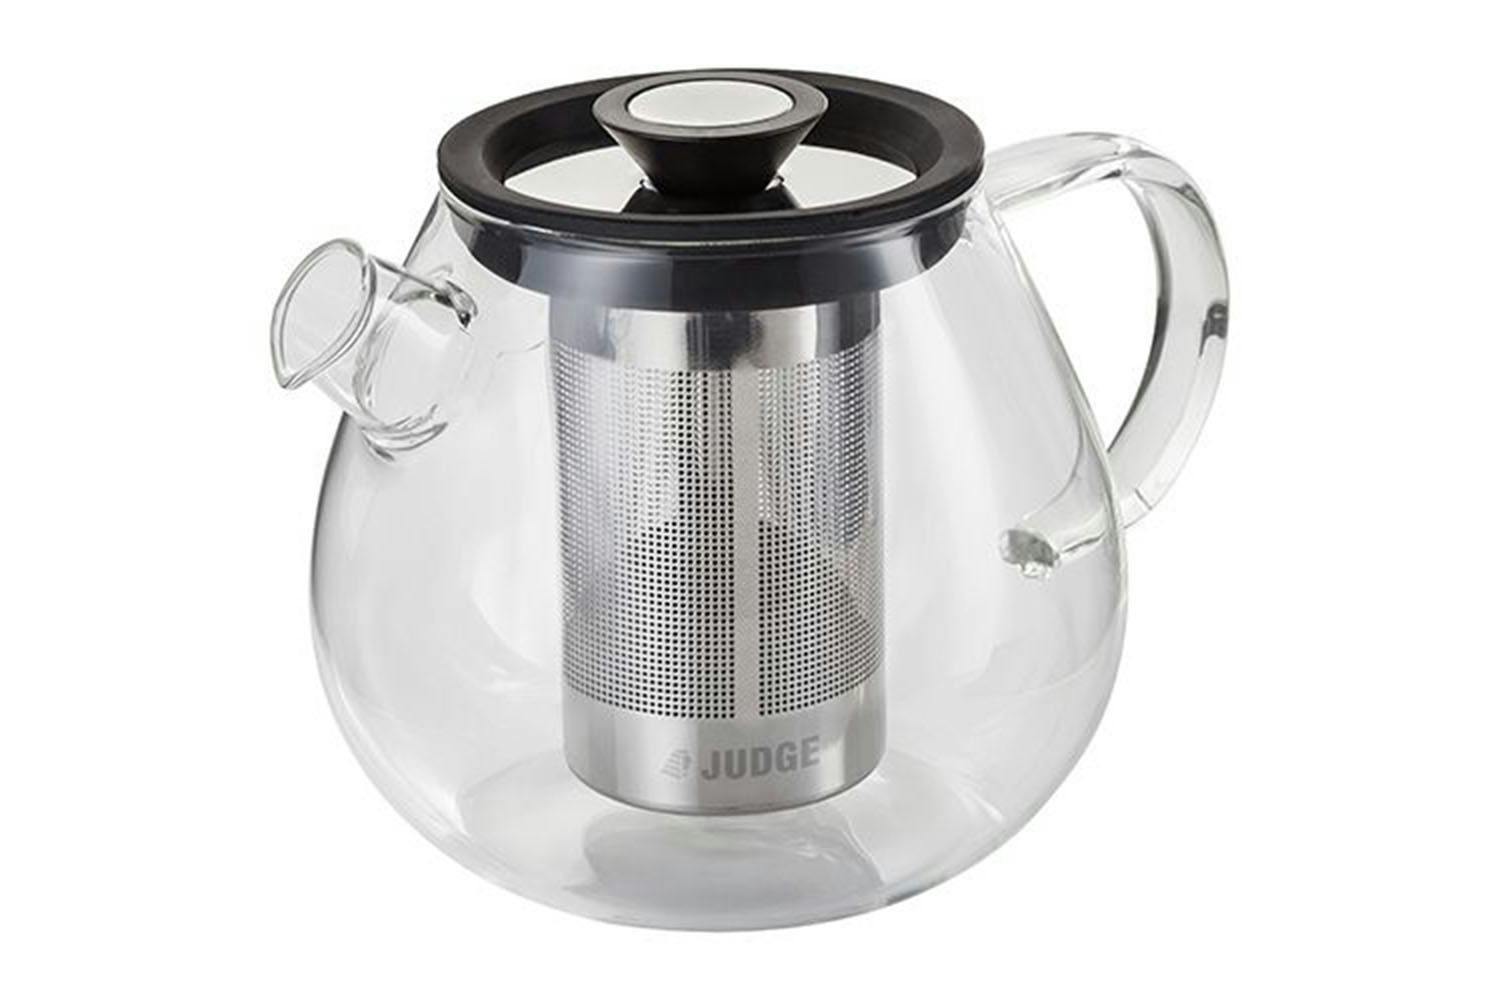 Judge JDG50 5L Glass Teapot | 5 Cup